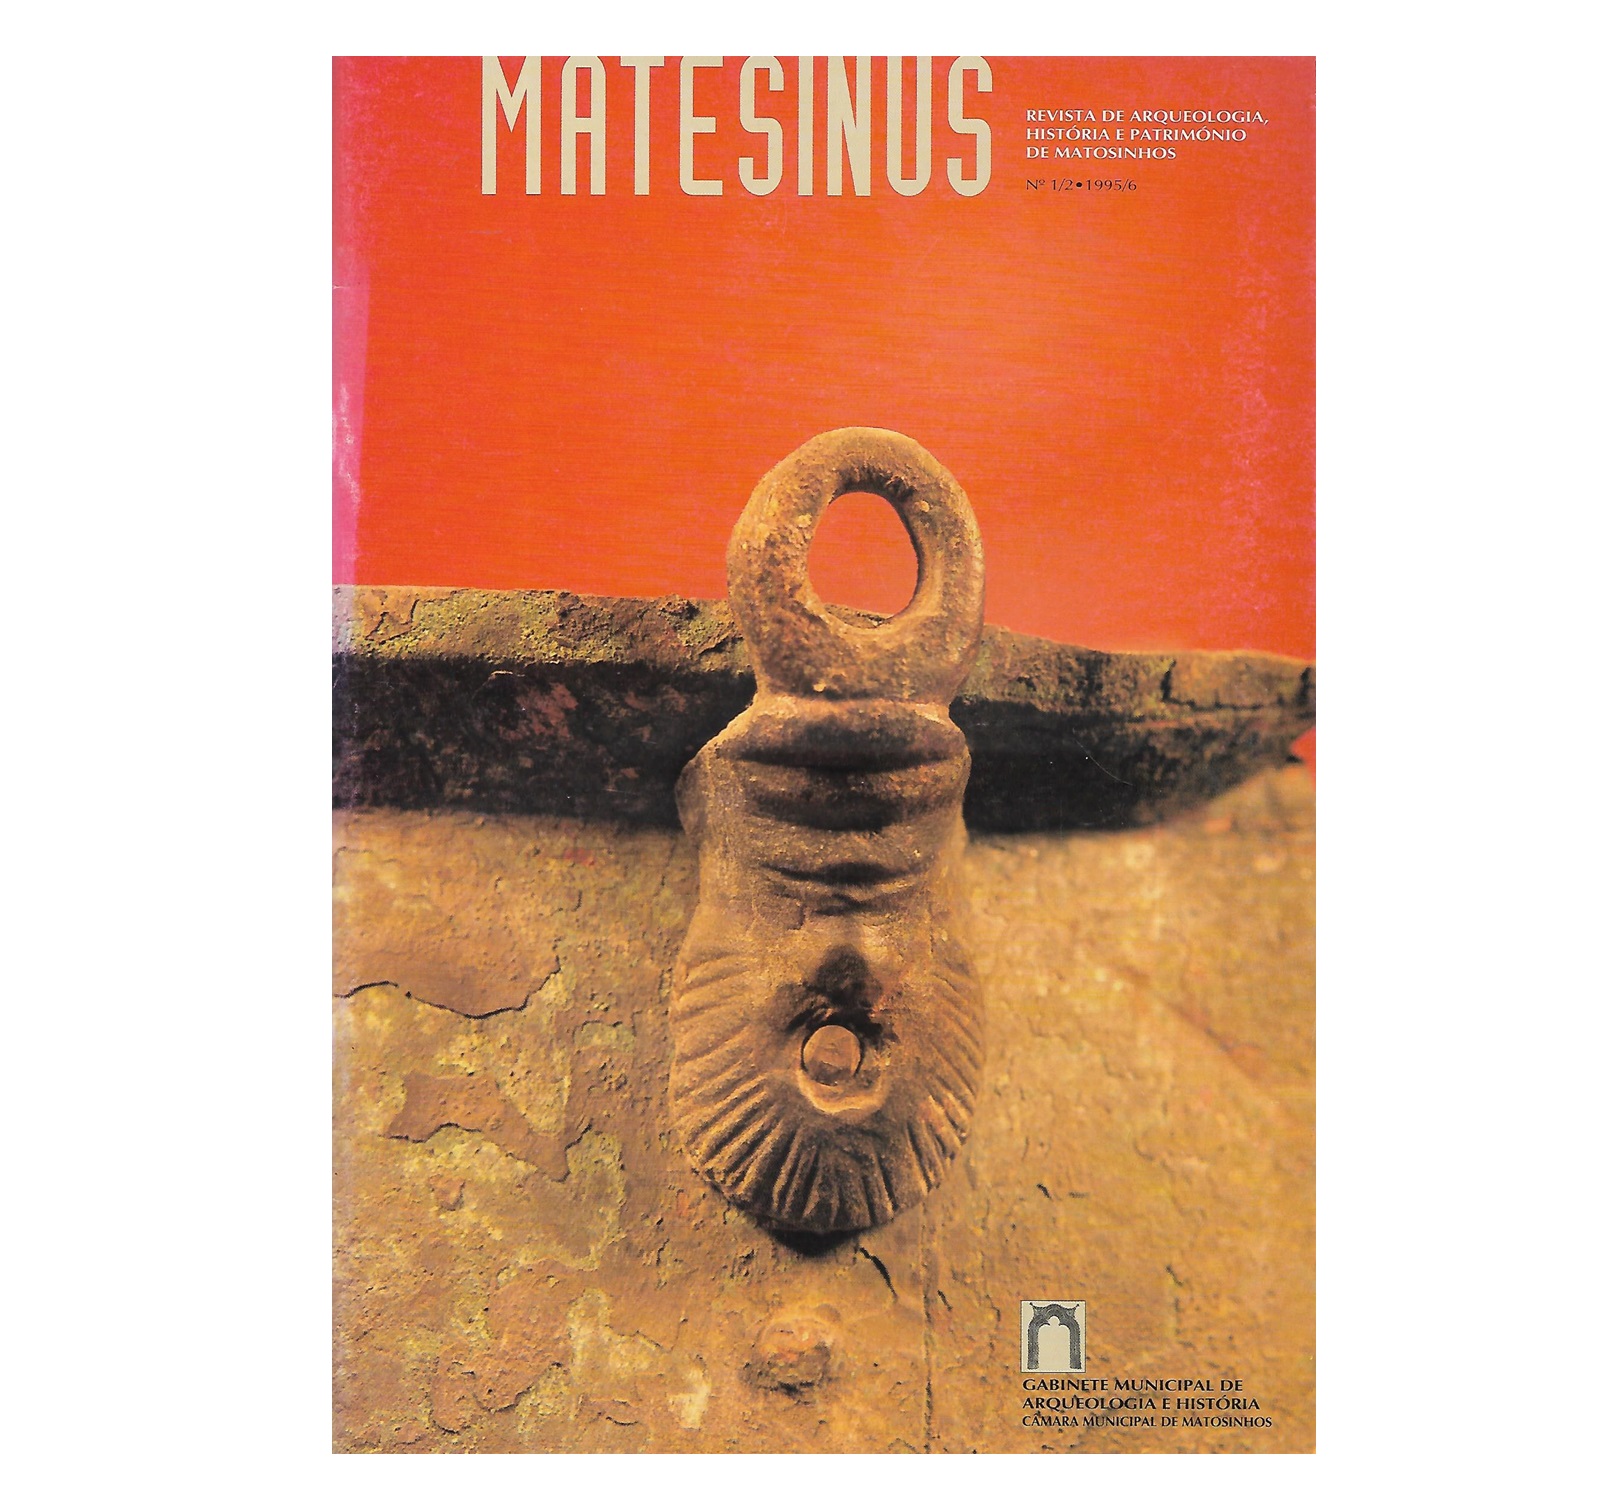 MATESINUS: REVISTA DE ARQUEOLOGIA, HISTÓRIA E PATRIMÓNIO DE MATOSINHOS